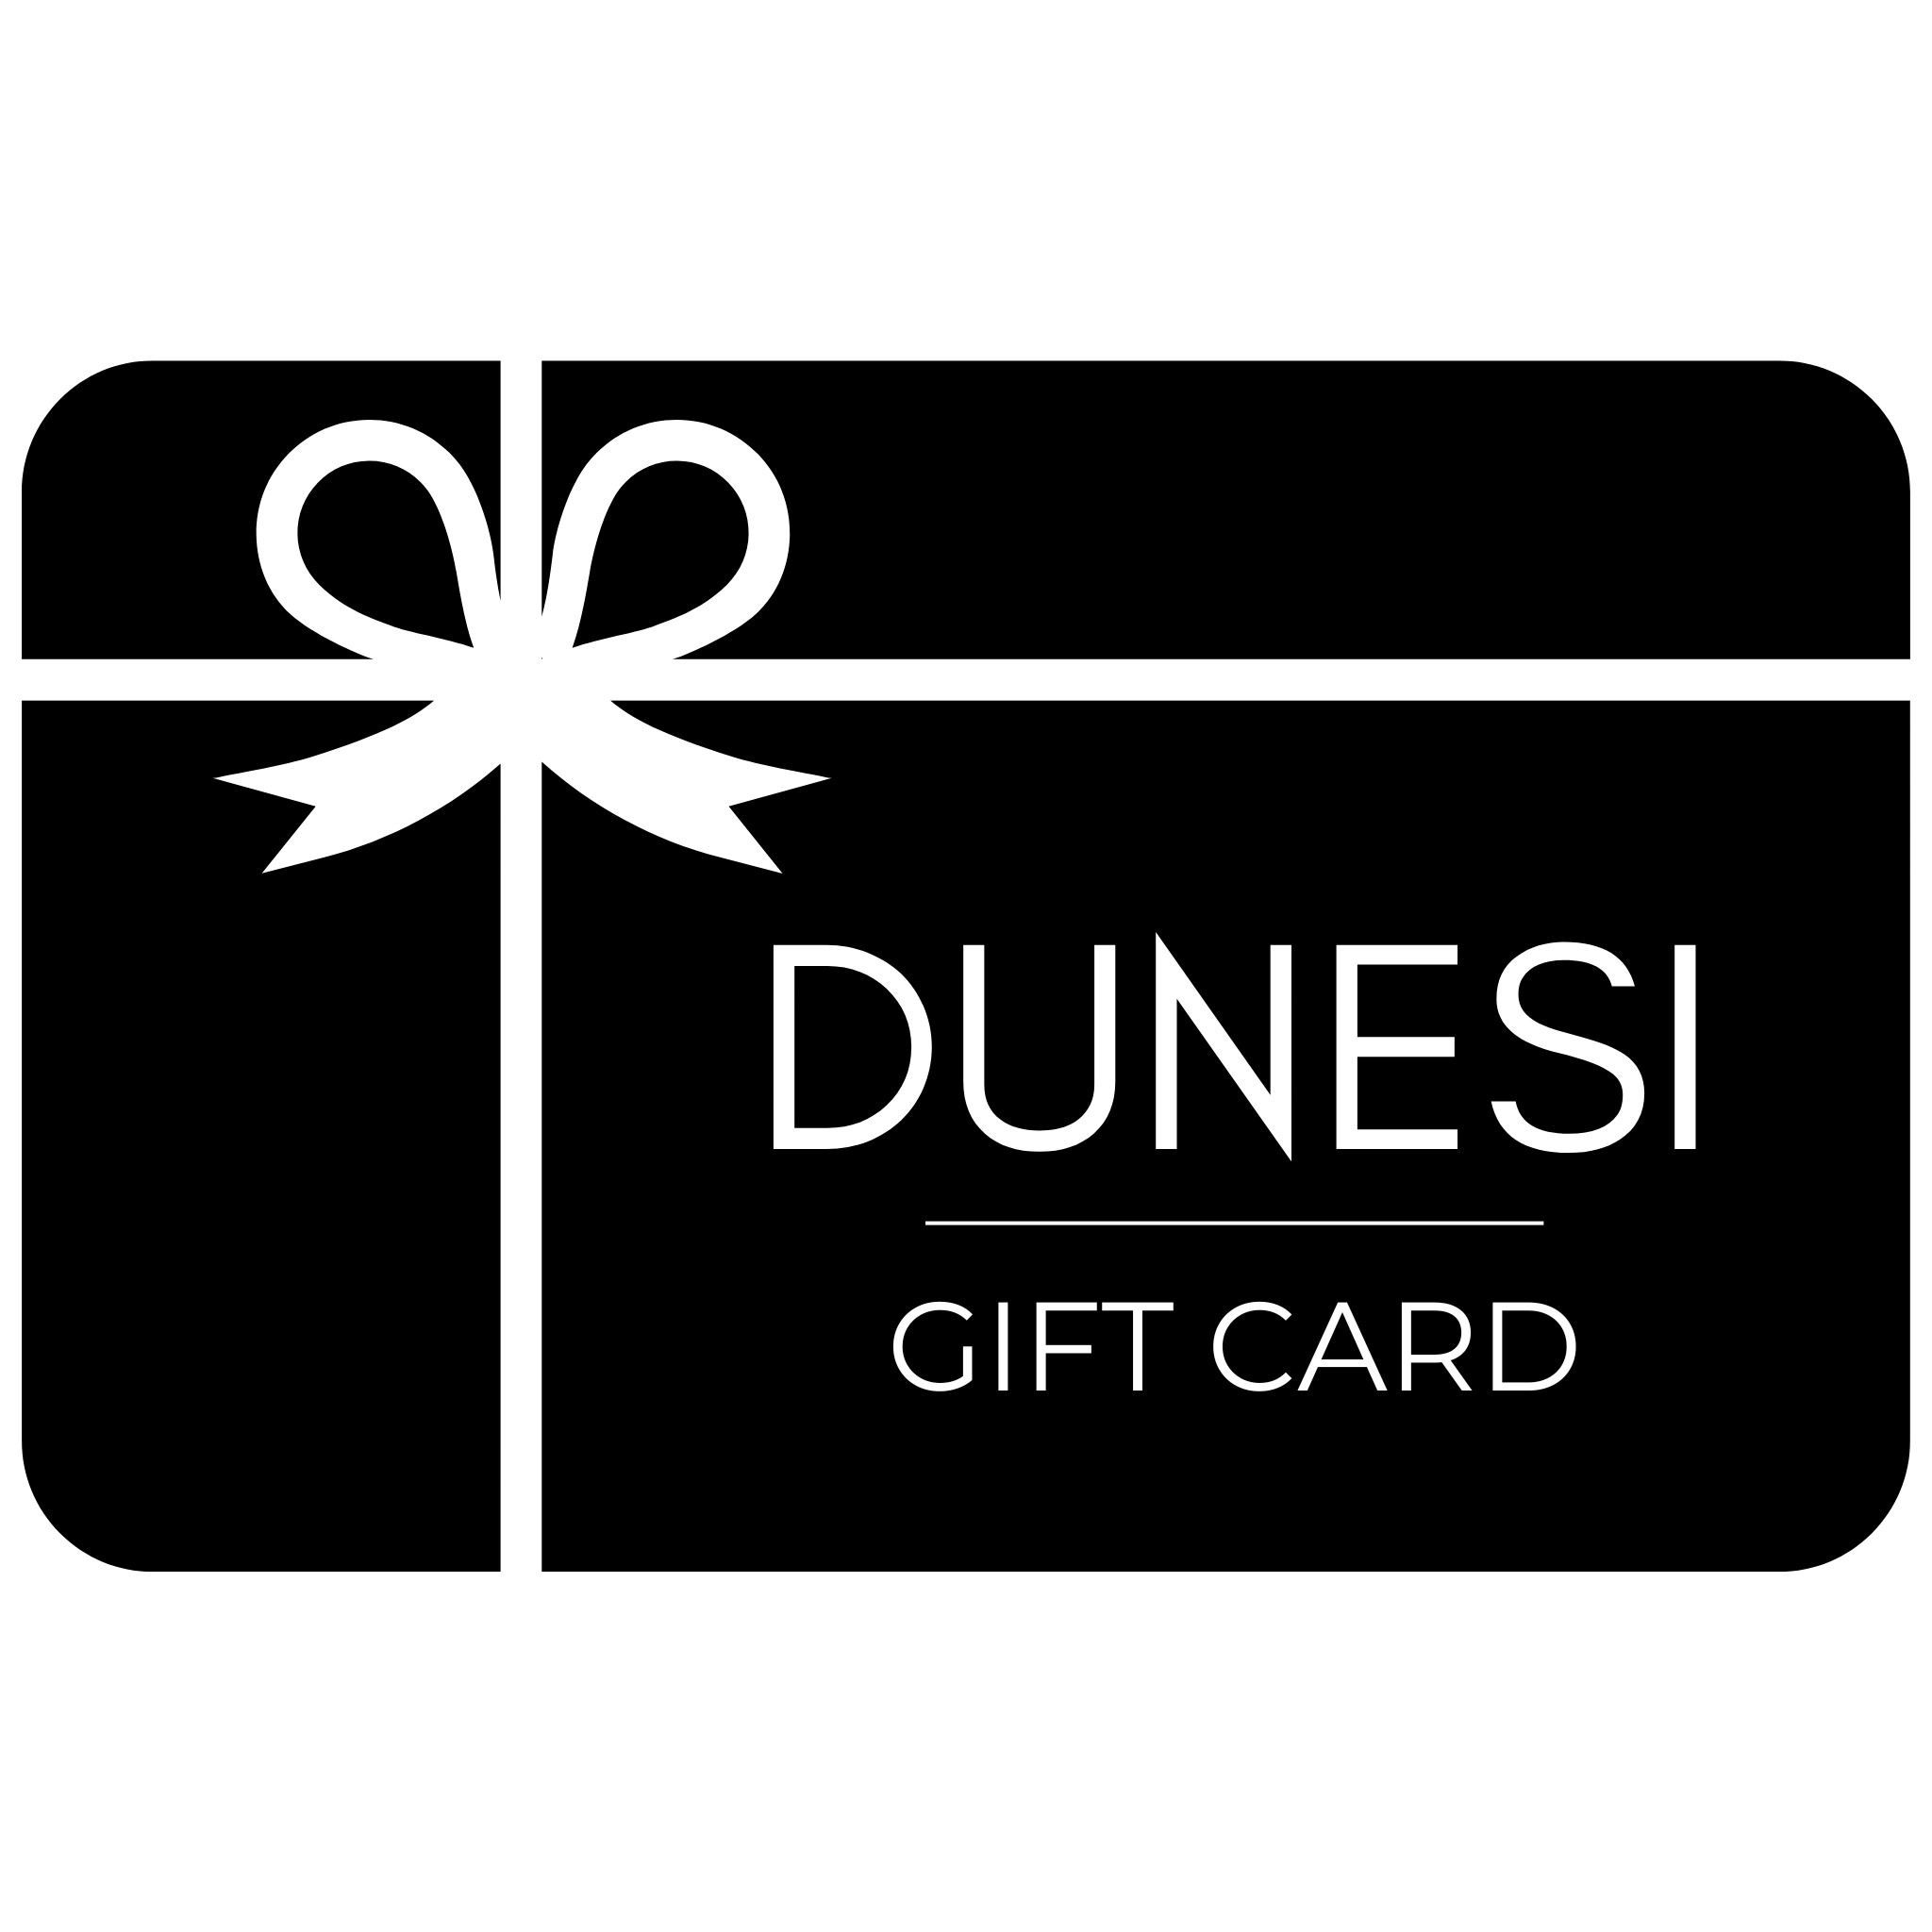 Dunesi Gift Card - Dunesi